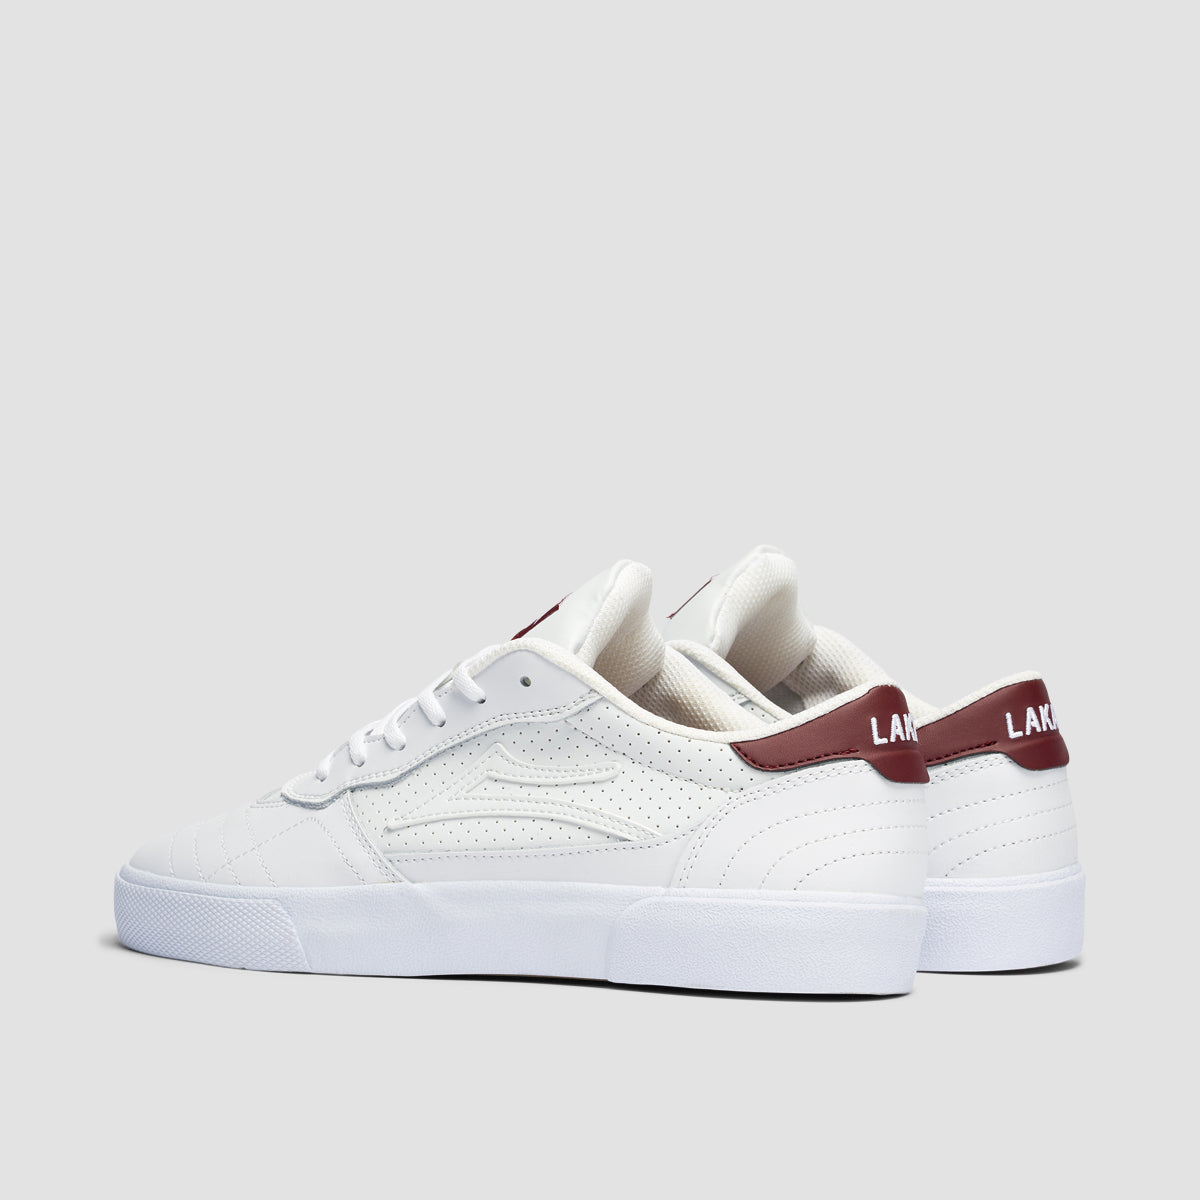 Lakai Cambridge Shoes - White/Burgundy Leather